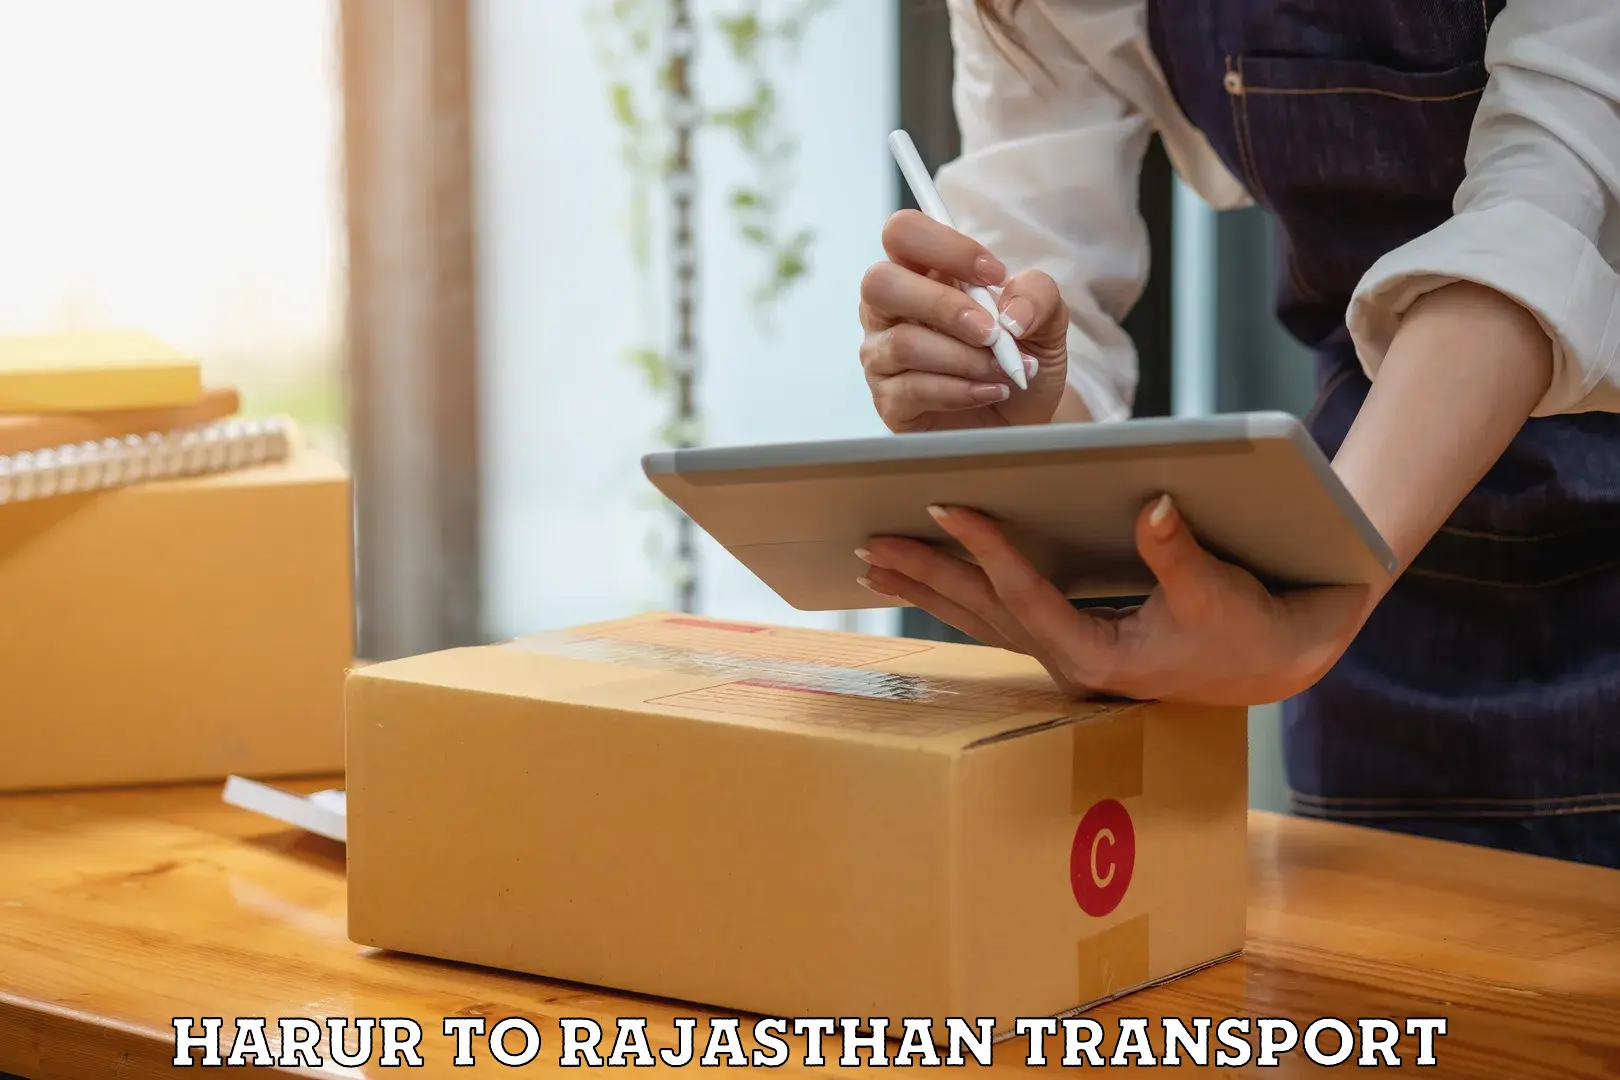 Two wheeler parcel service Harur to Yathalakunta